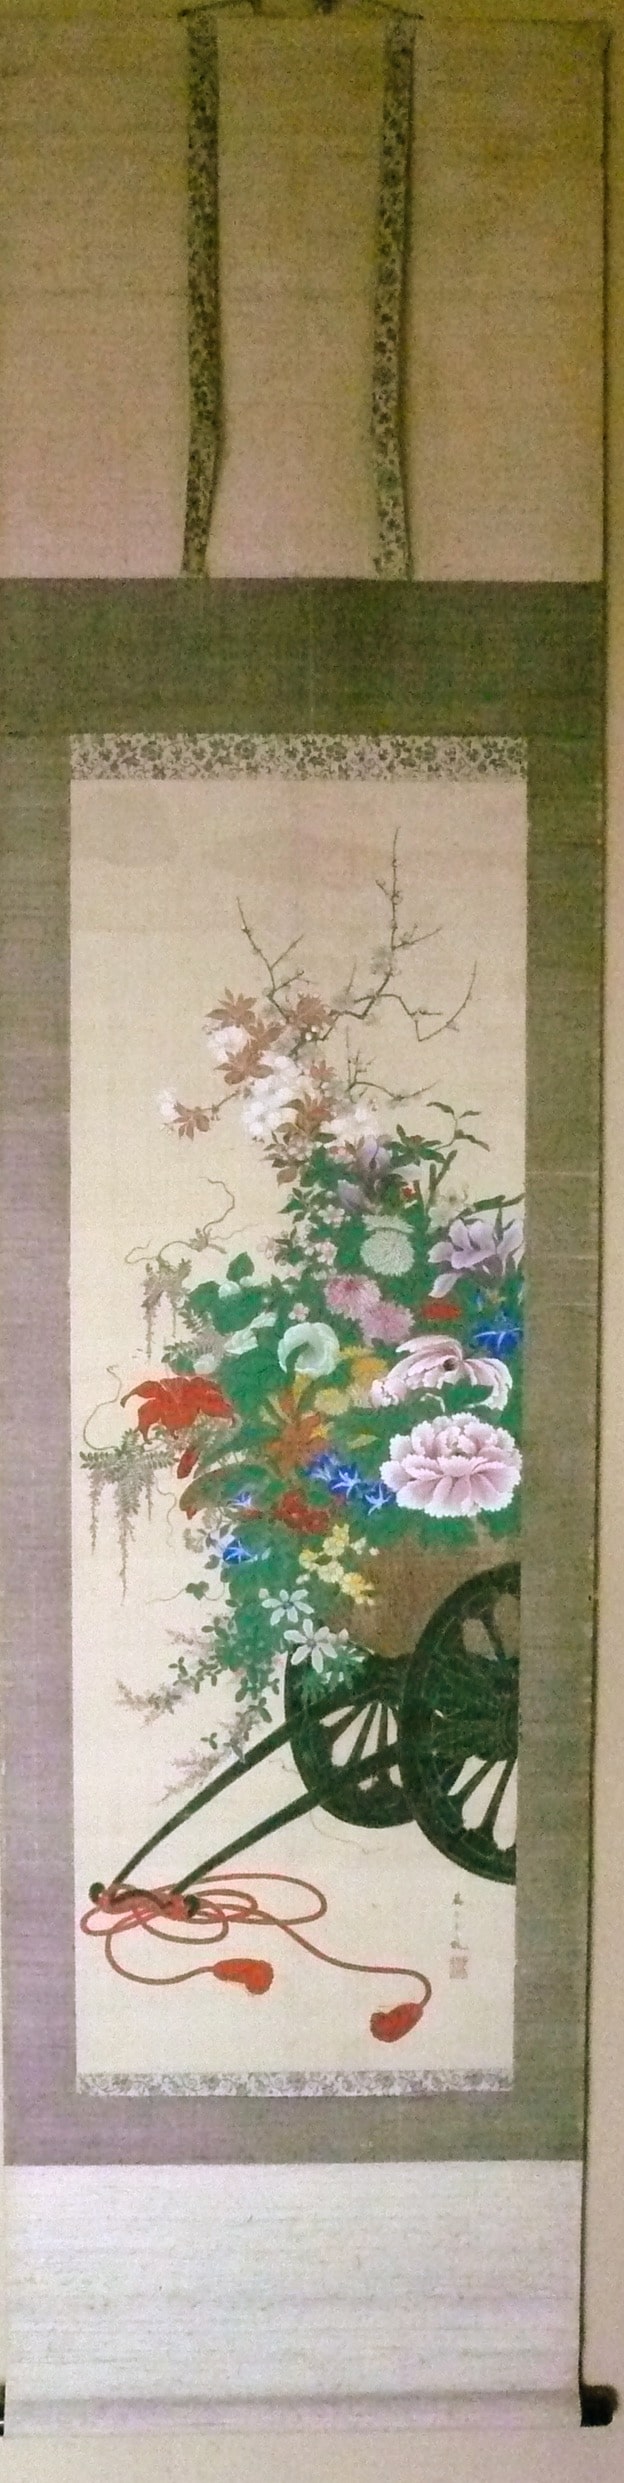 kakemono peinture sur soie Tora Tori